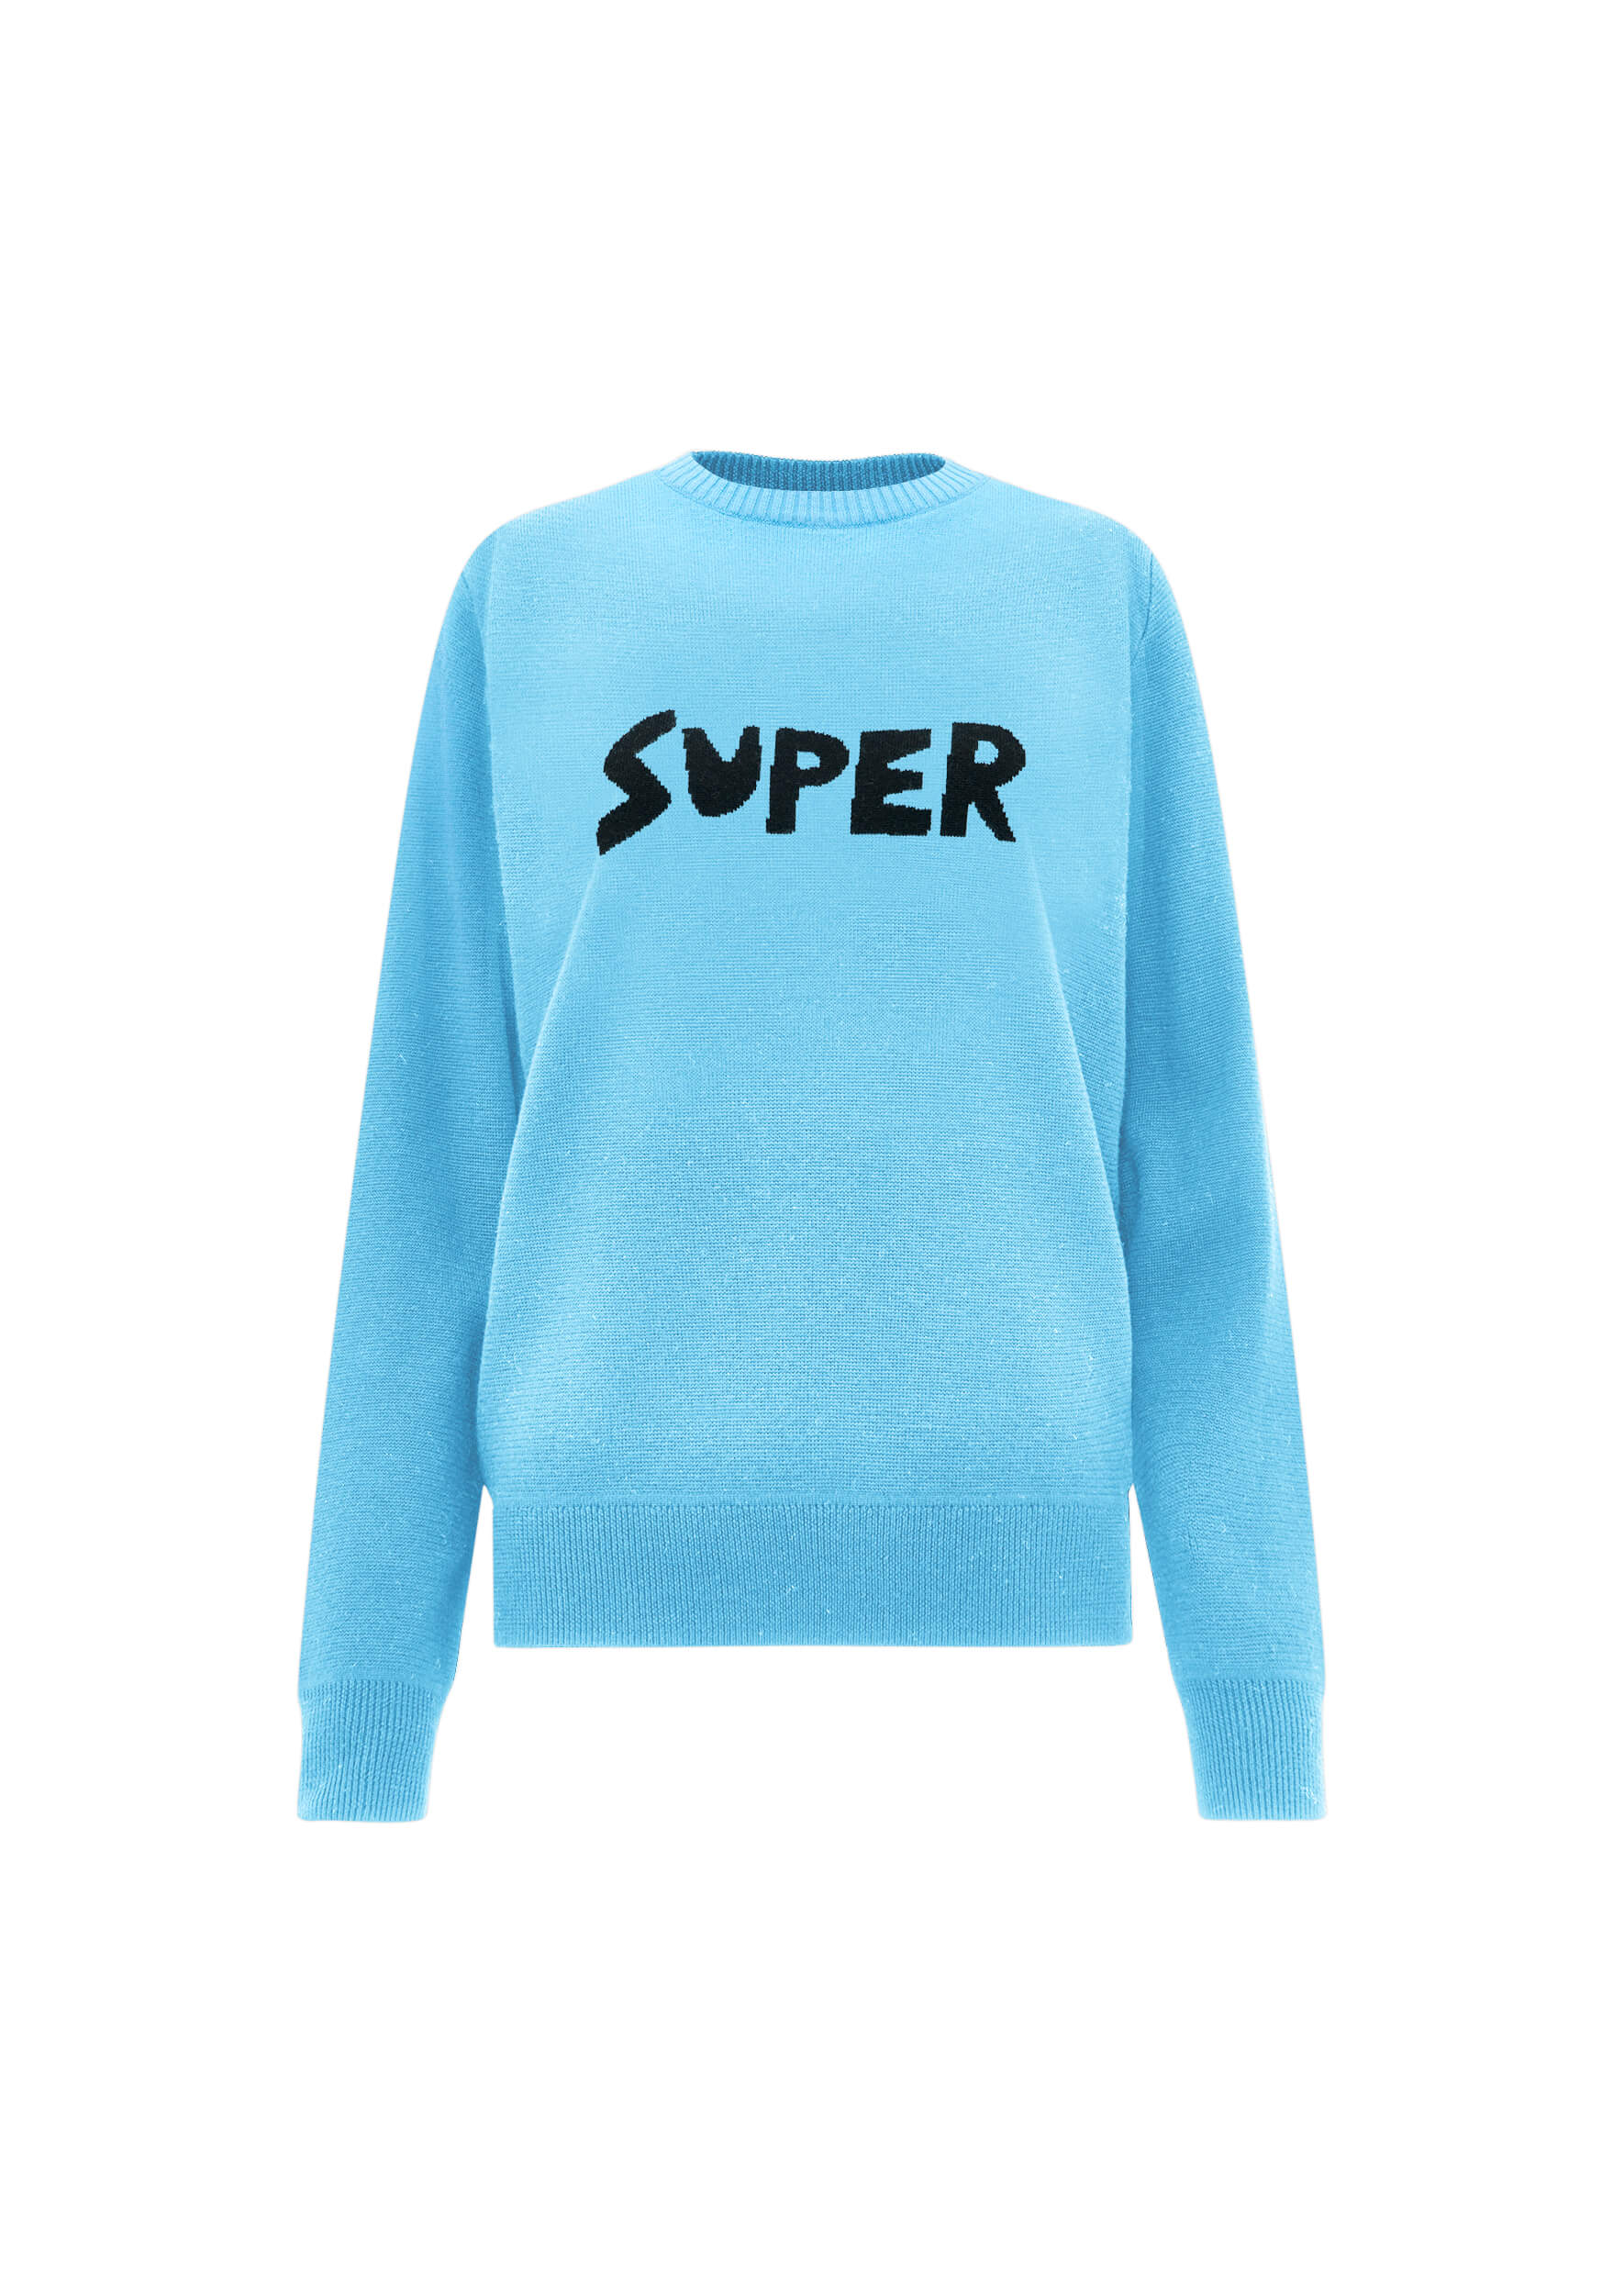 BF Super jumper in pale blue